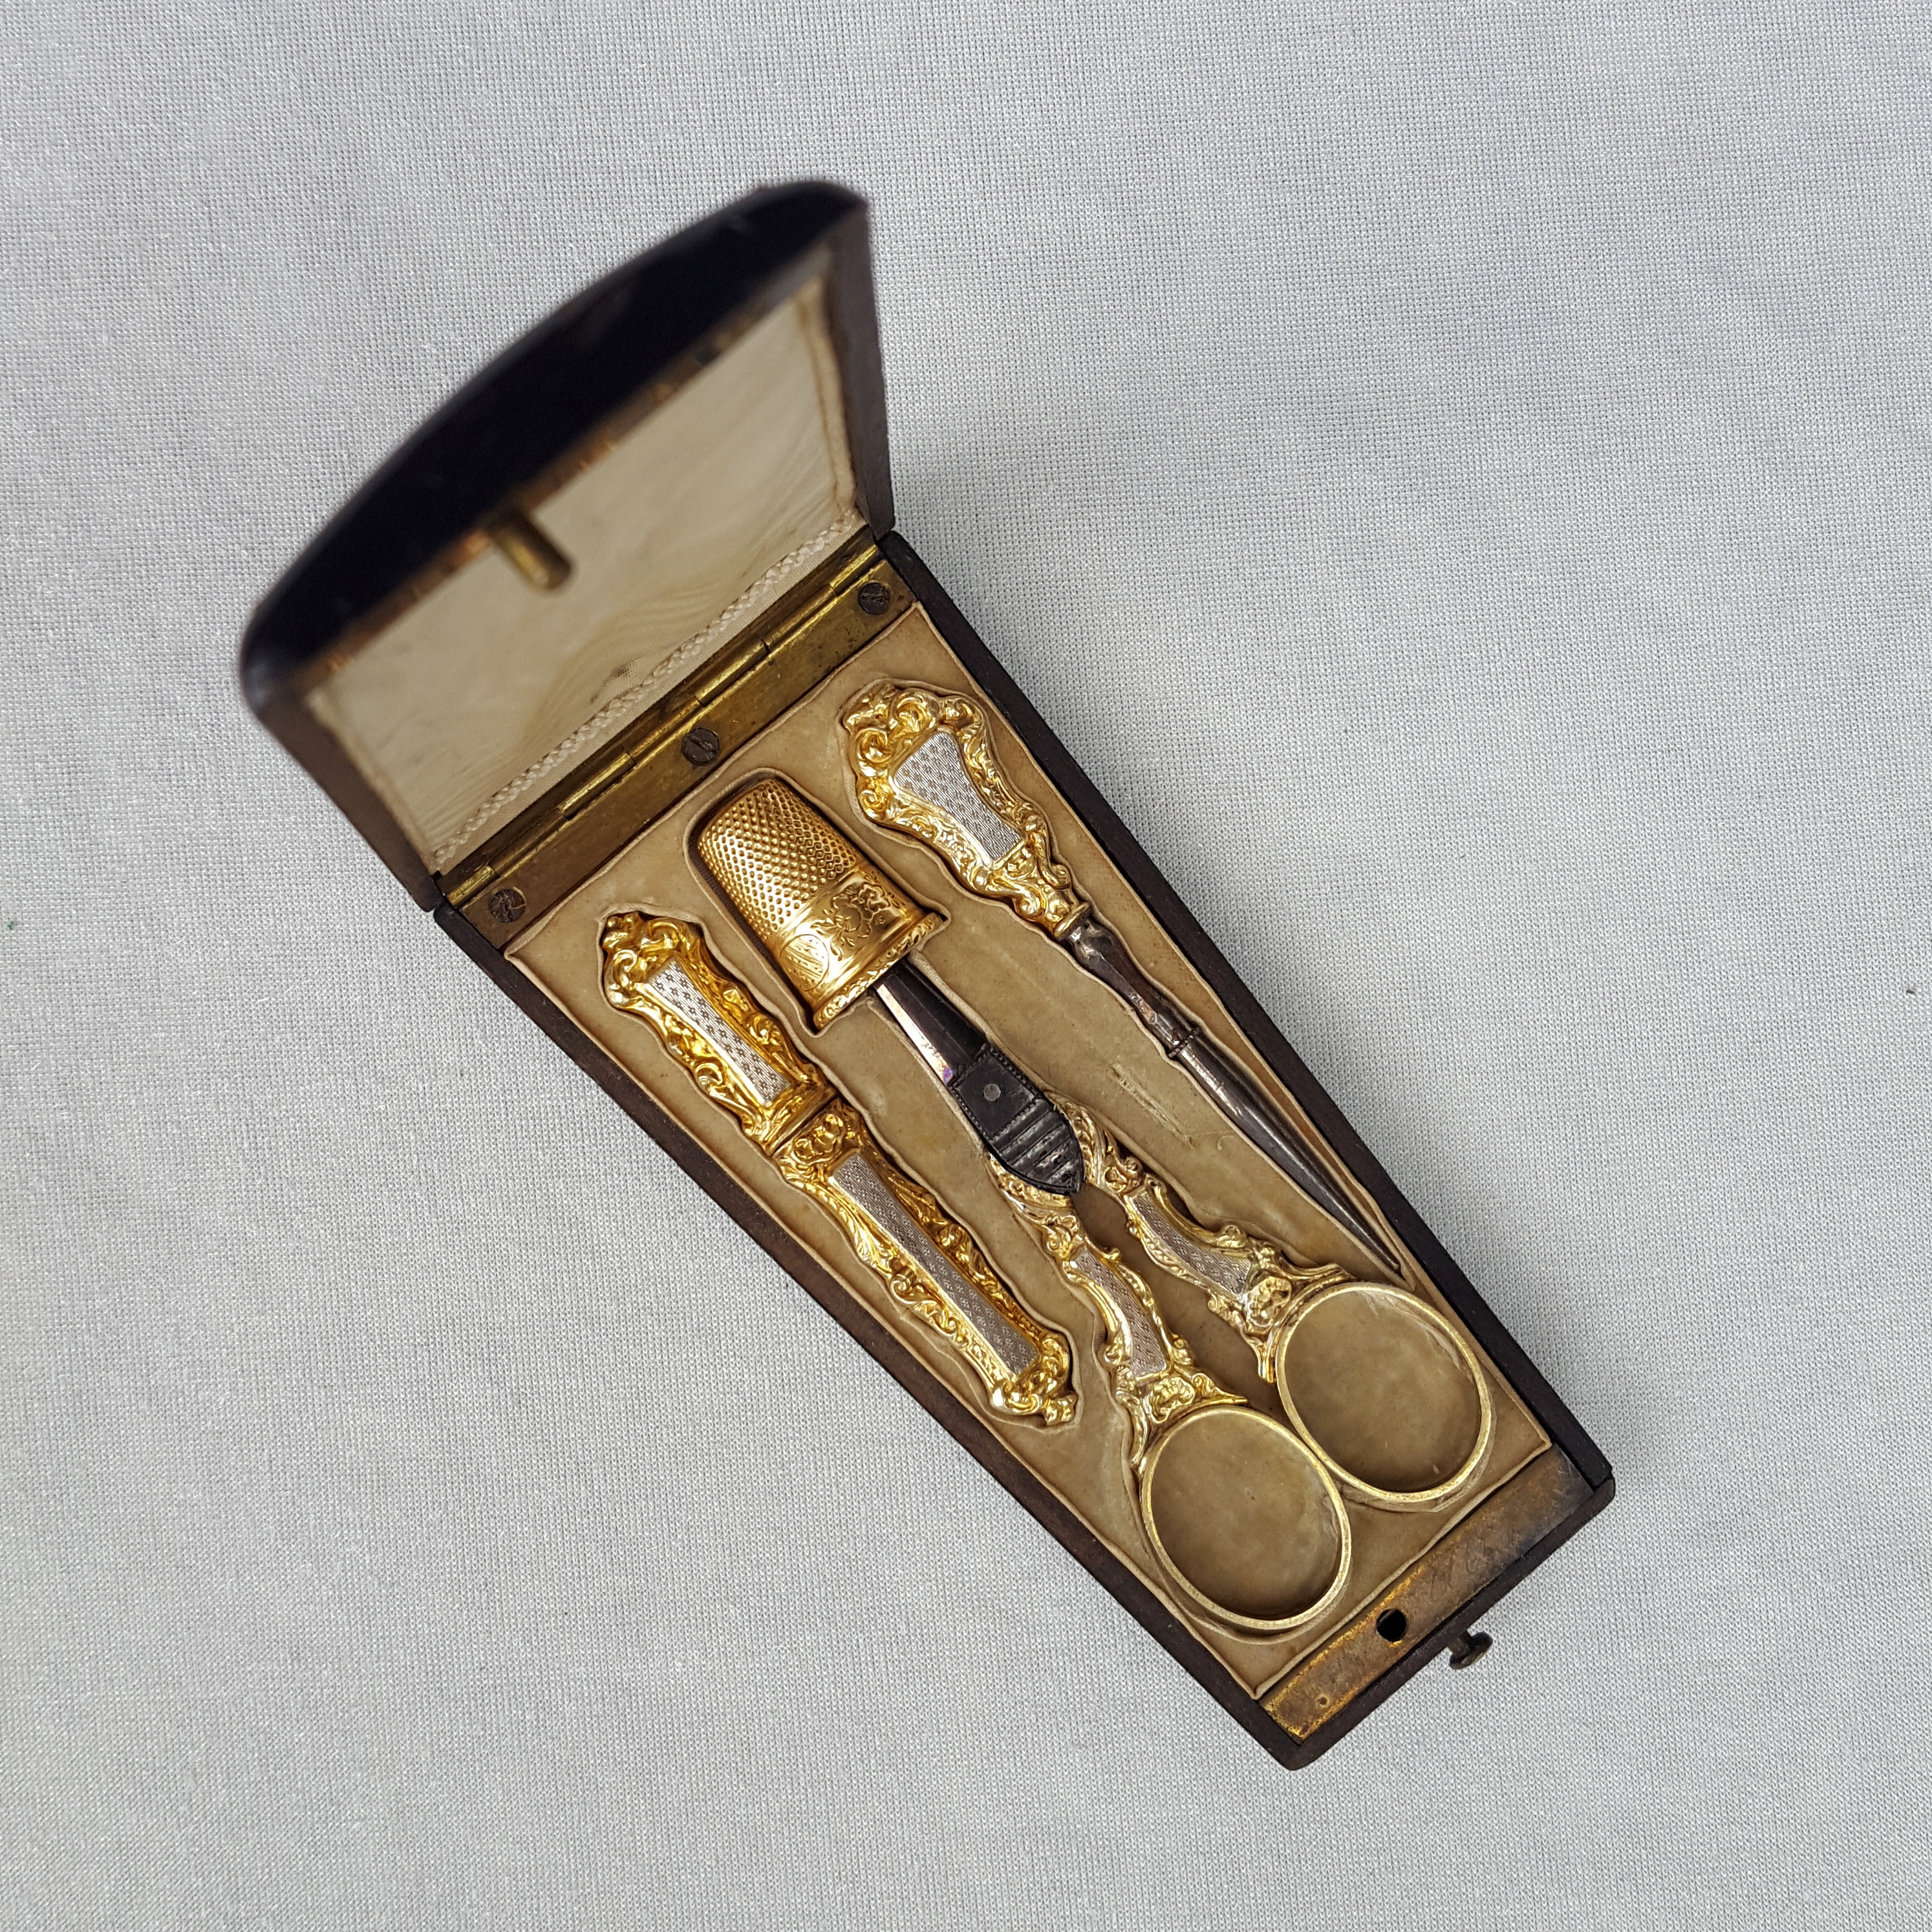 Nécessaire de couture vermeil et or, XIXe siècle